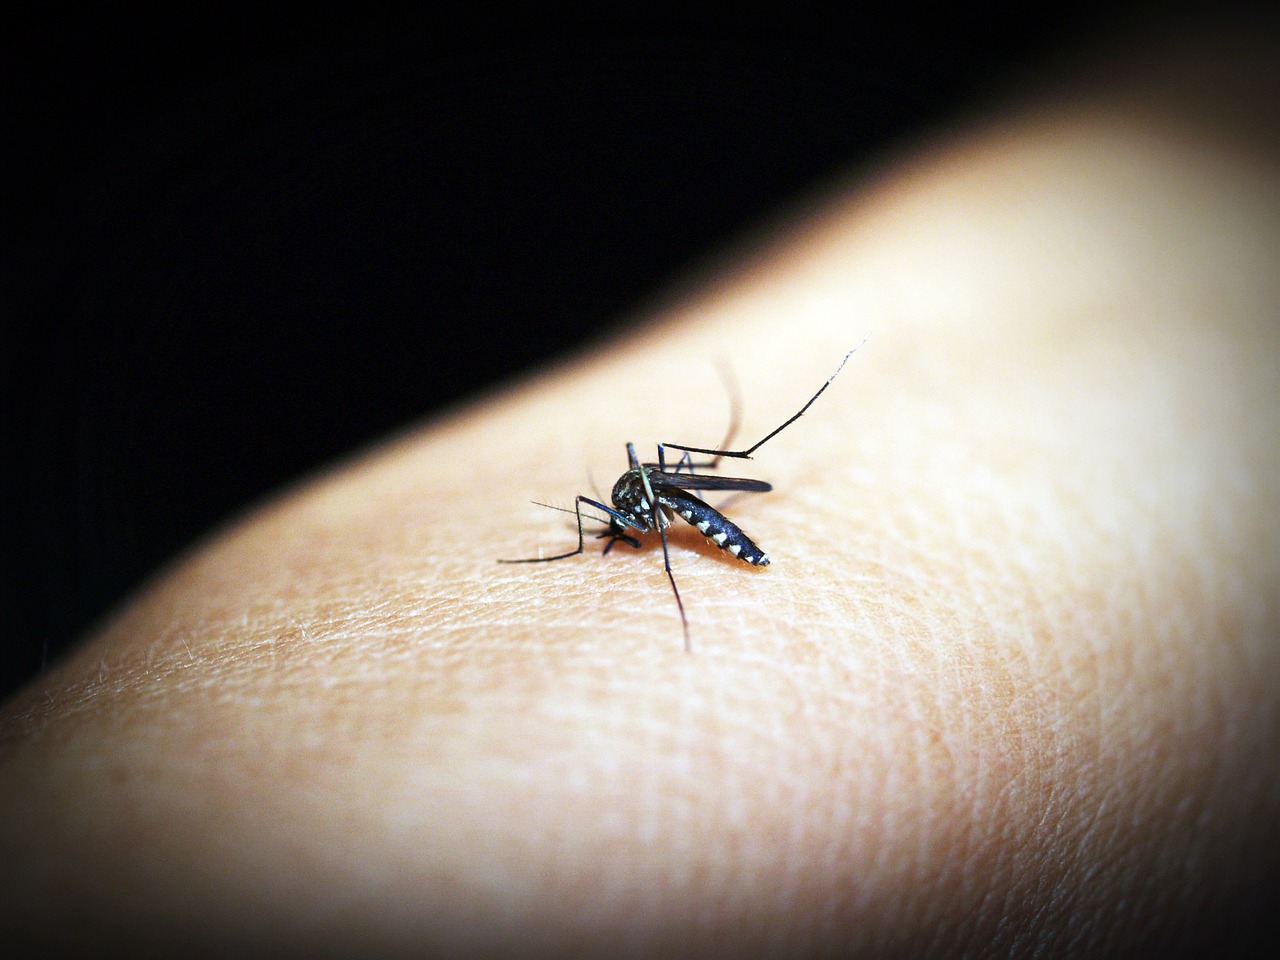 mosquito malaria gnat free photo